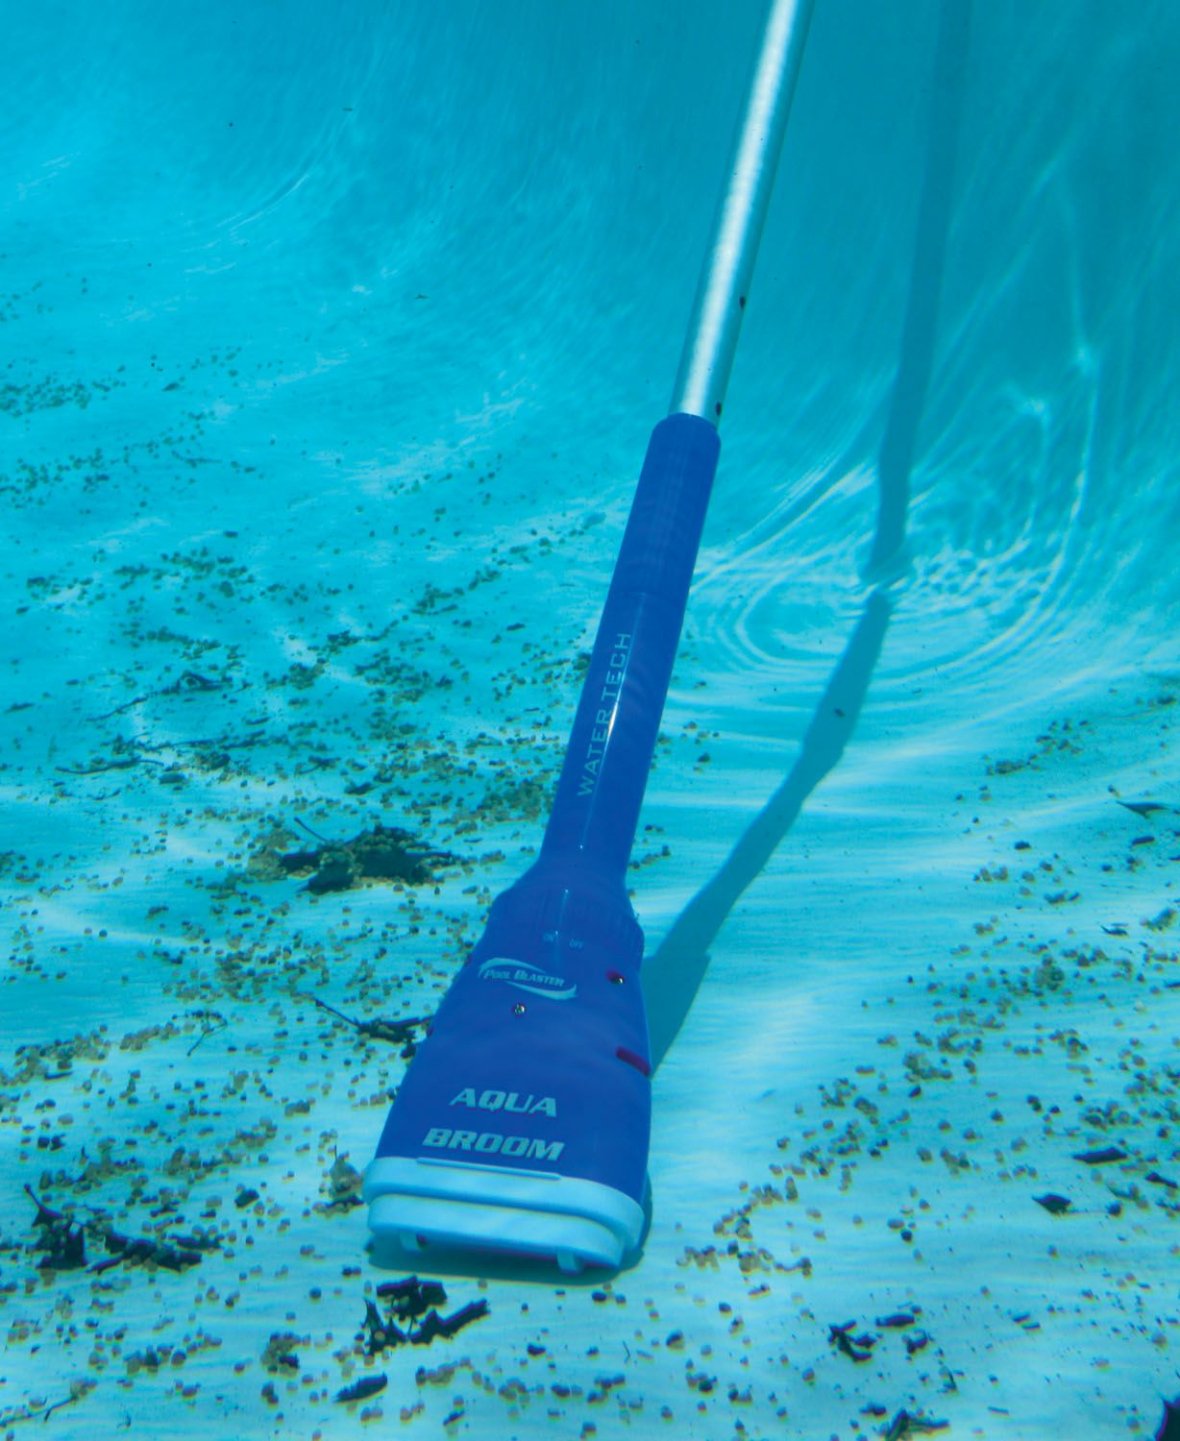 Aqua Broom Ultra aspirateur de piscine - 6